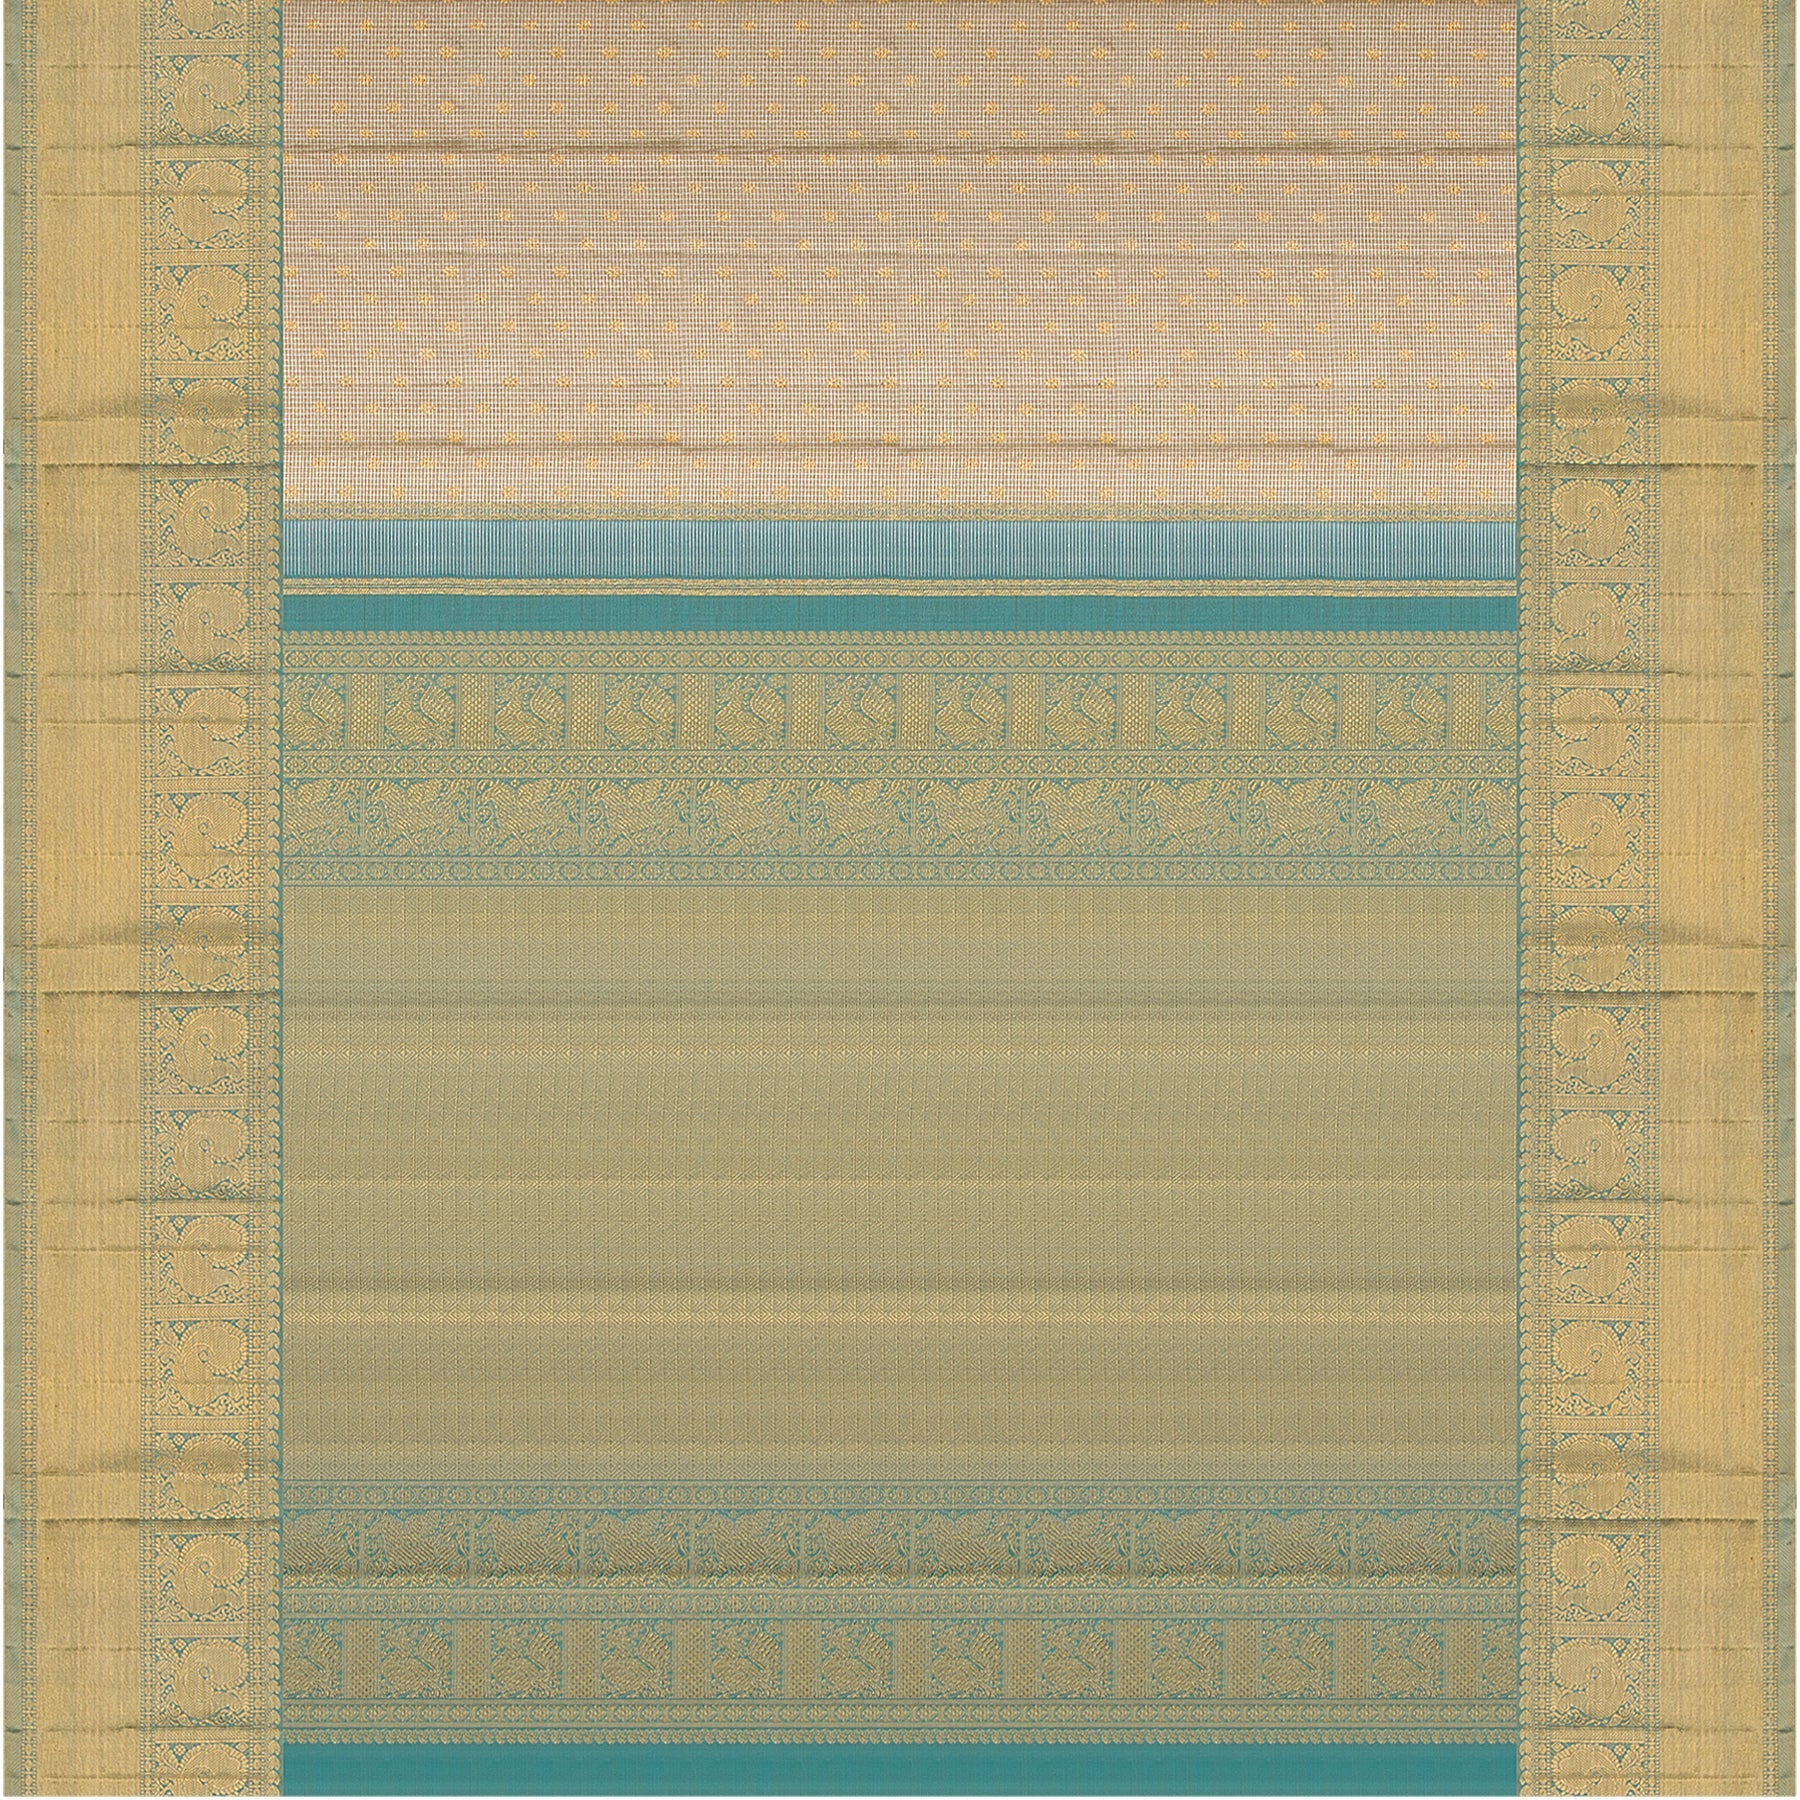 Kanakavalli Kanjivaram Silk Sari 23-110-HS001-02958 - Full View